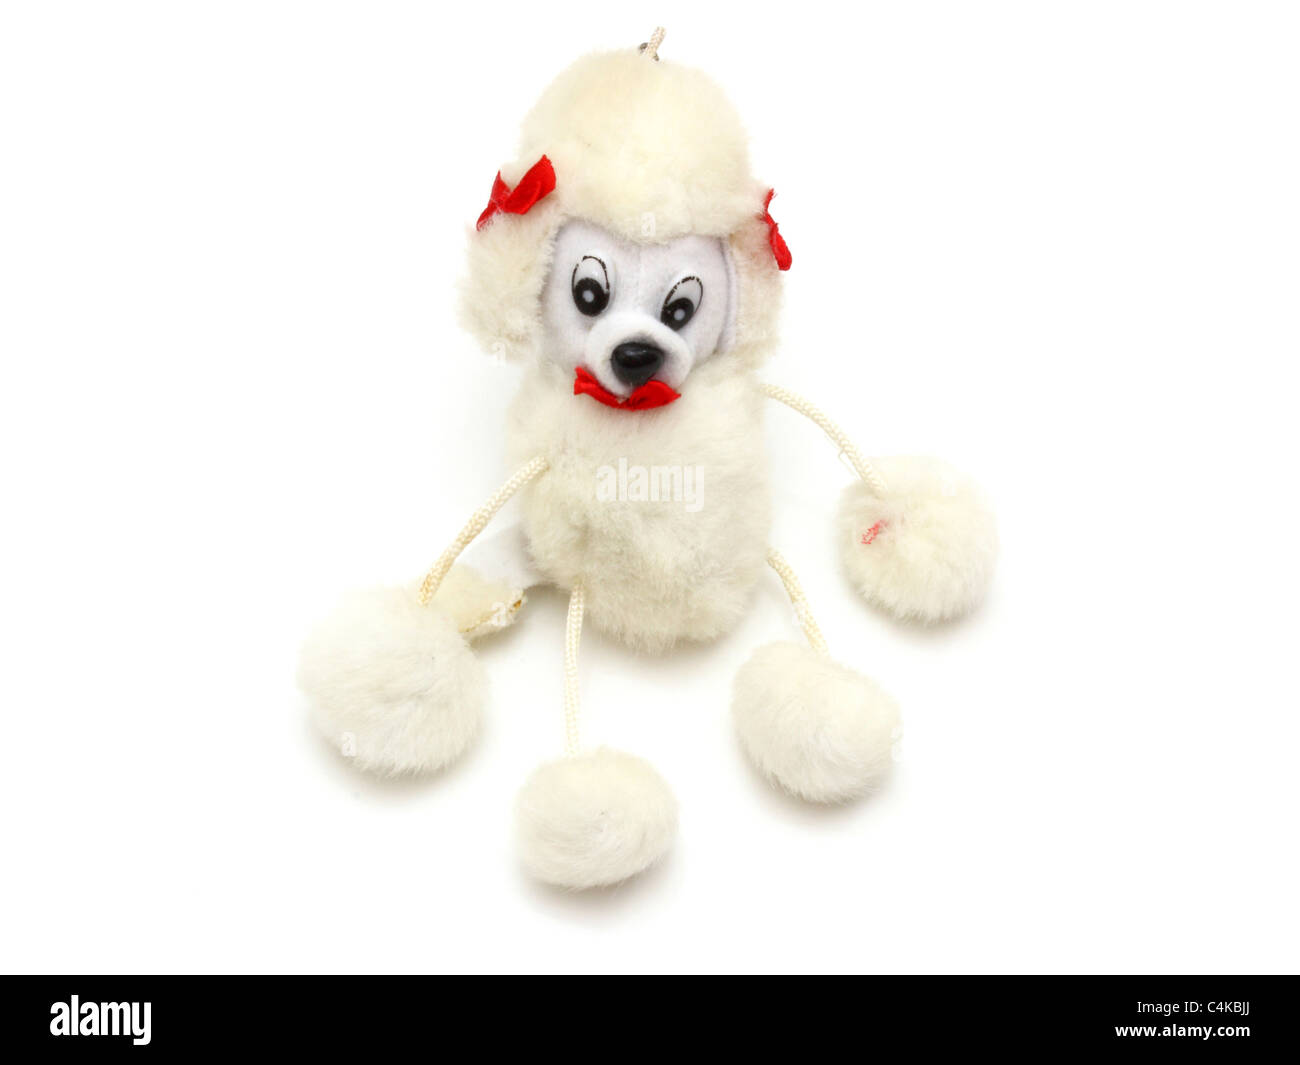 Olaf soft cuddly plush toy isolated on white background Stock Photo - Alamy